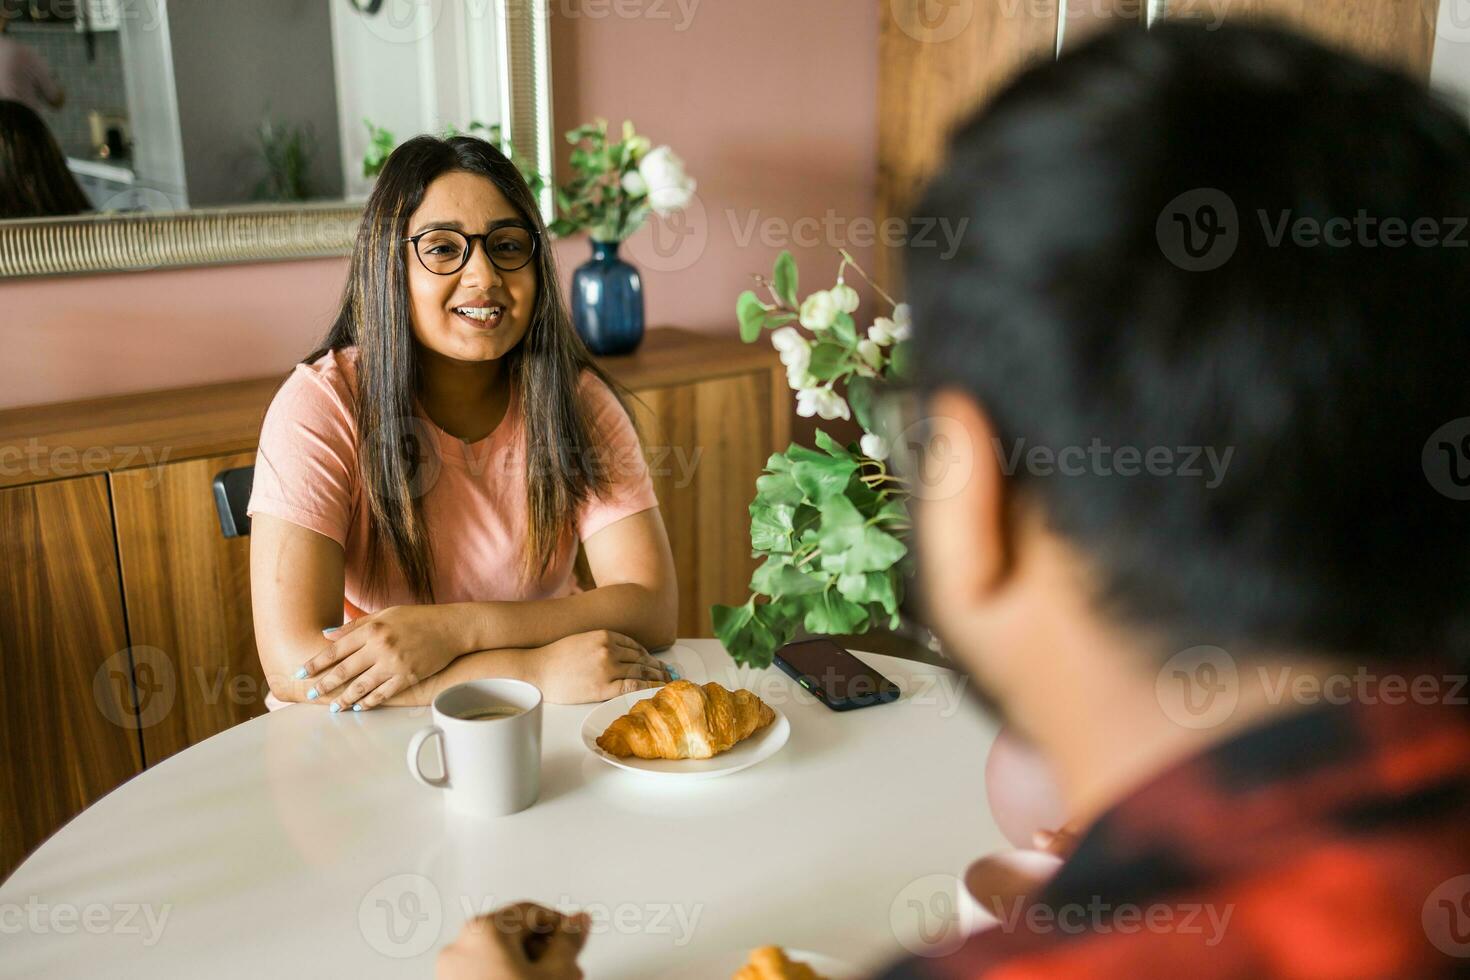 jong verschillend liefhebbend paar aan het eten croissant en praat samen Bij huis in ontbijt tijd. communicatie en verhouding concept foto